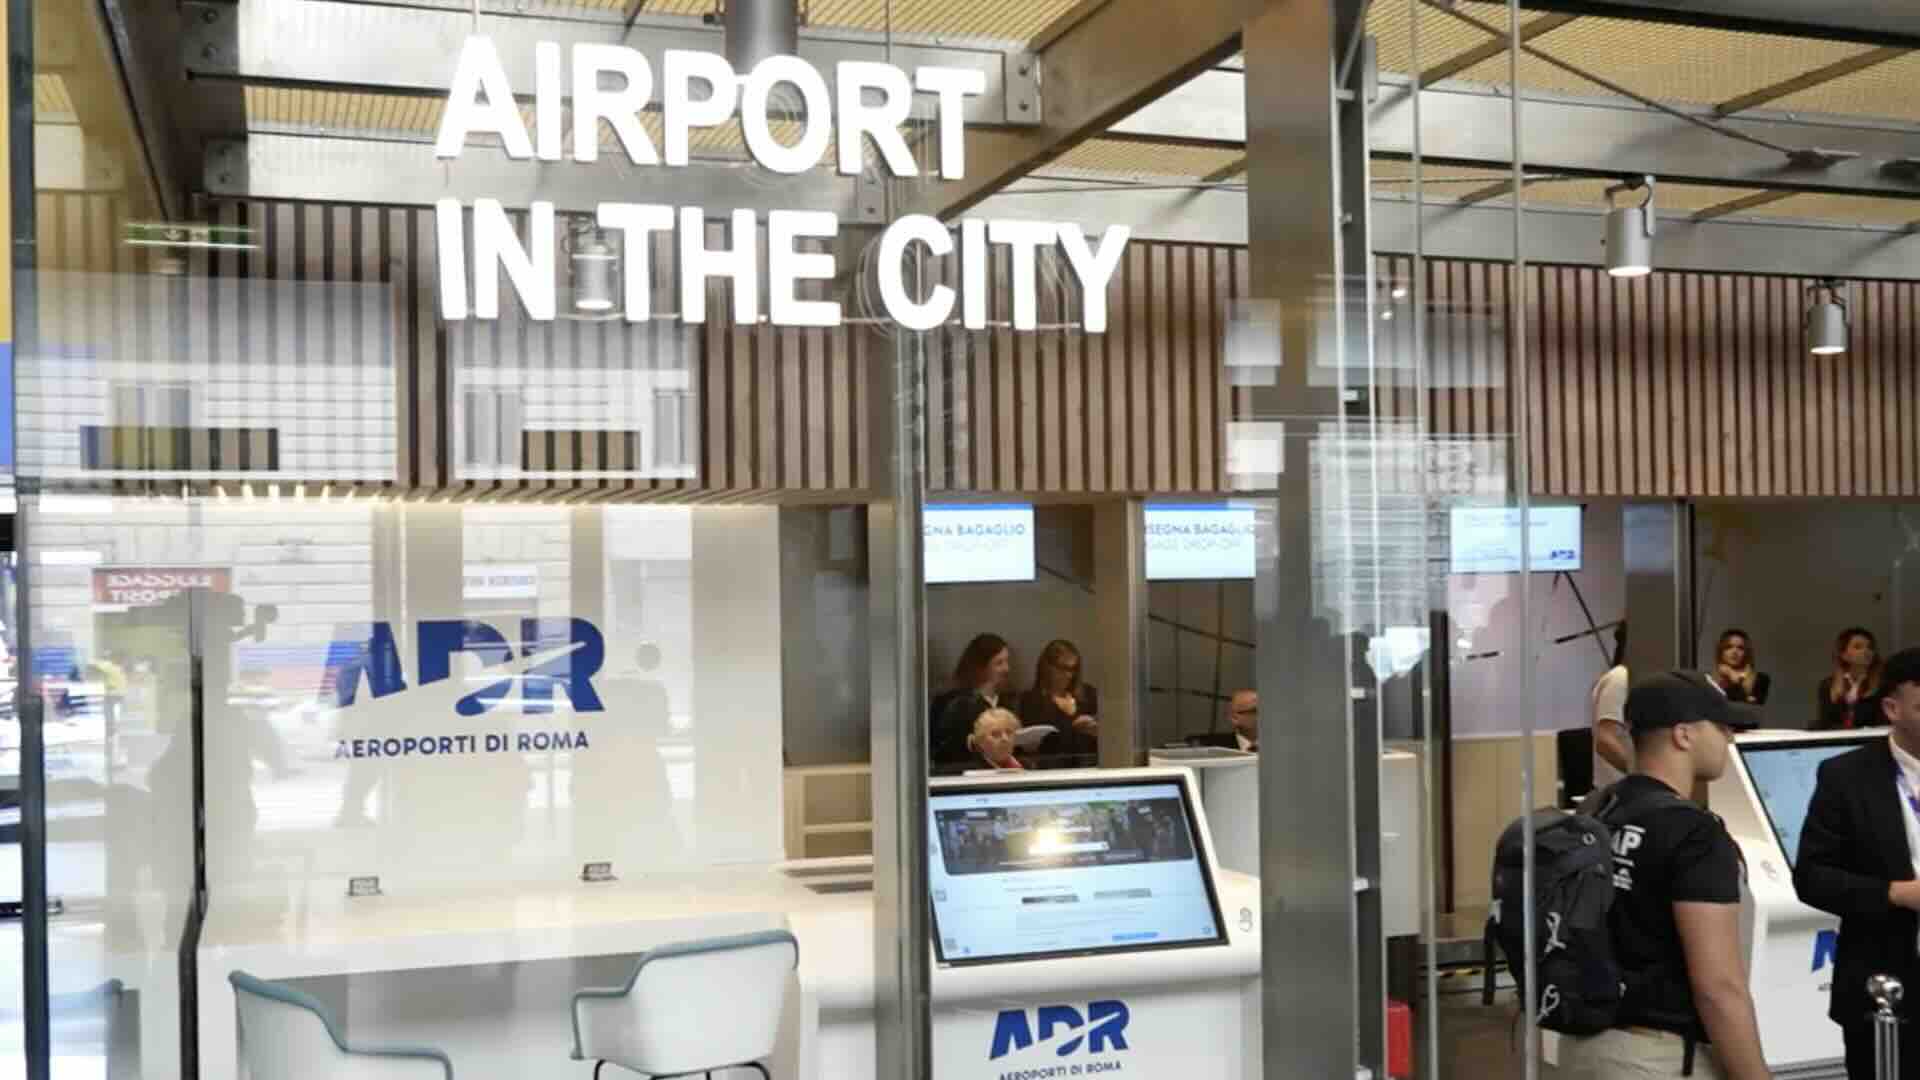 Aeroporto di Roma, check-in bagagli da Roma Termini con Airport in the City